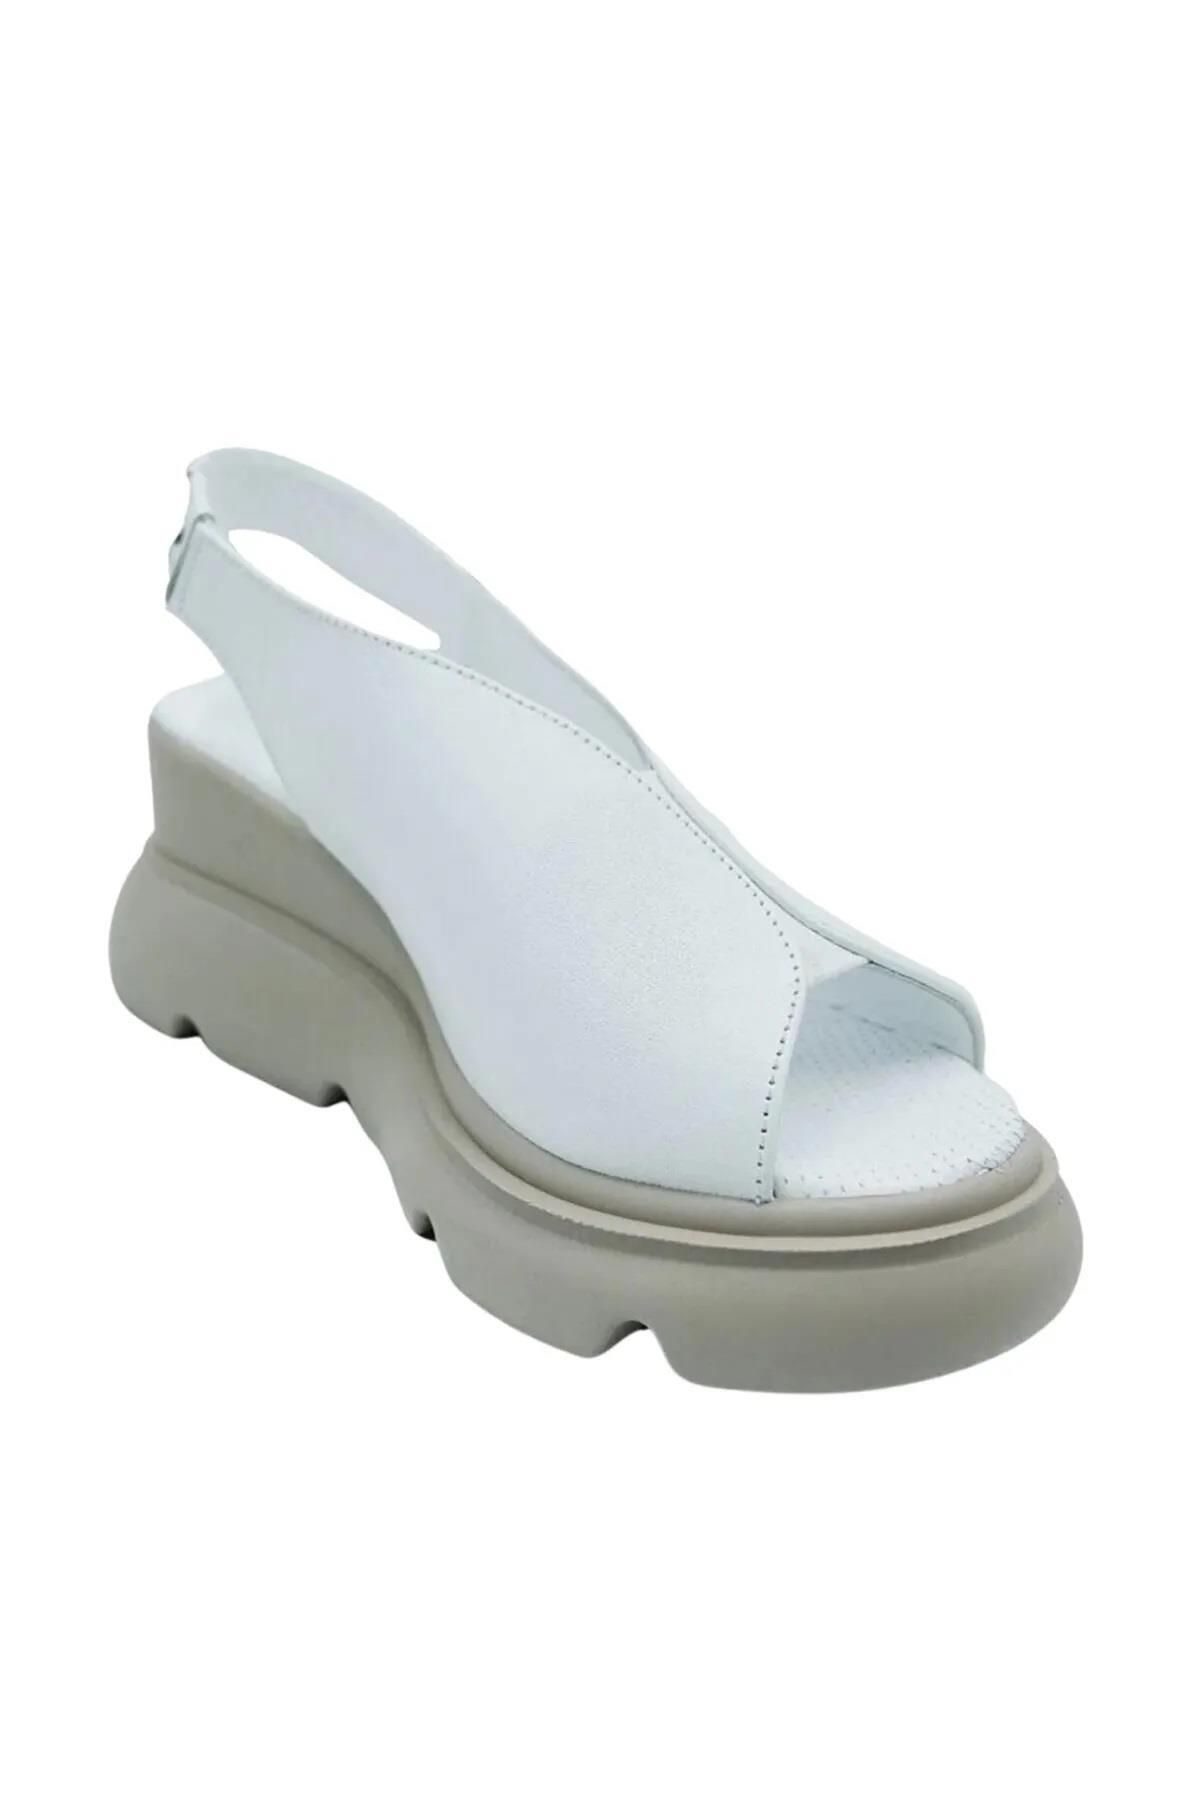 Pierre Cardin PC-7179 Dolgu Topuk Beyaz Kadın Sandalet